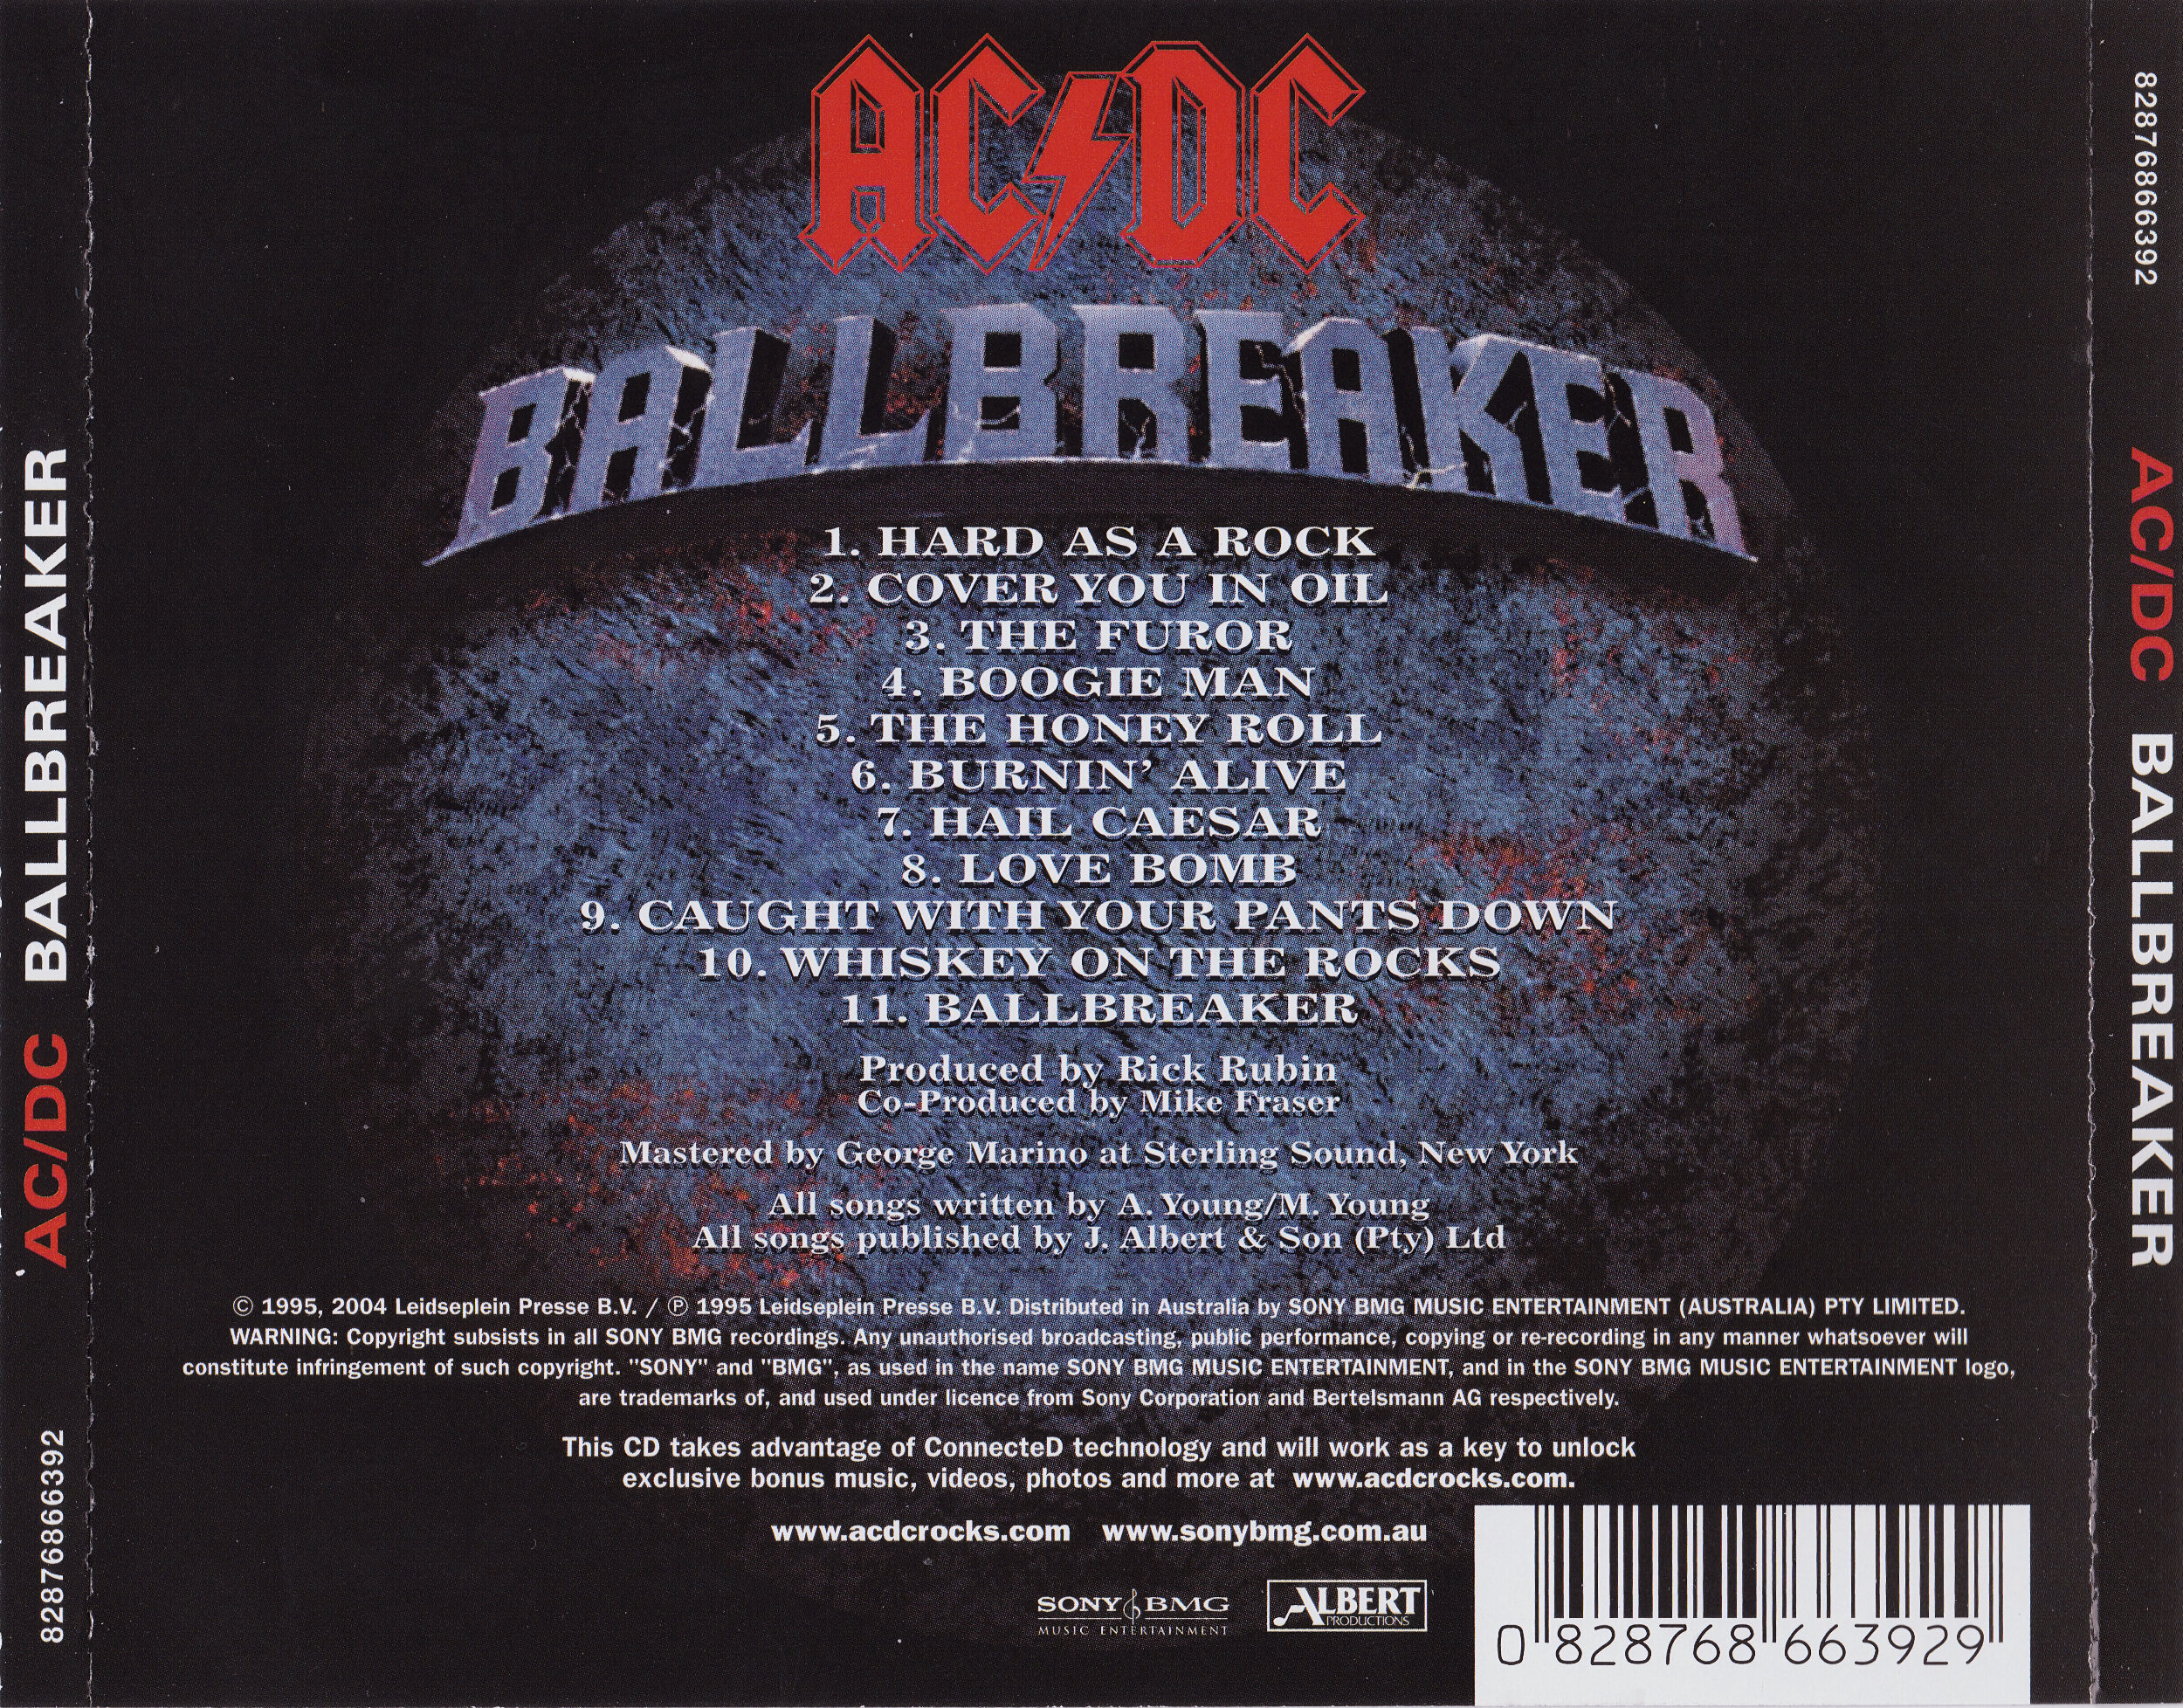 – Ballbreaker (Album Review On Vinyl, CD, and Apple Music) — Subjective